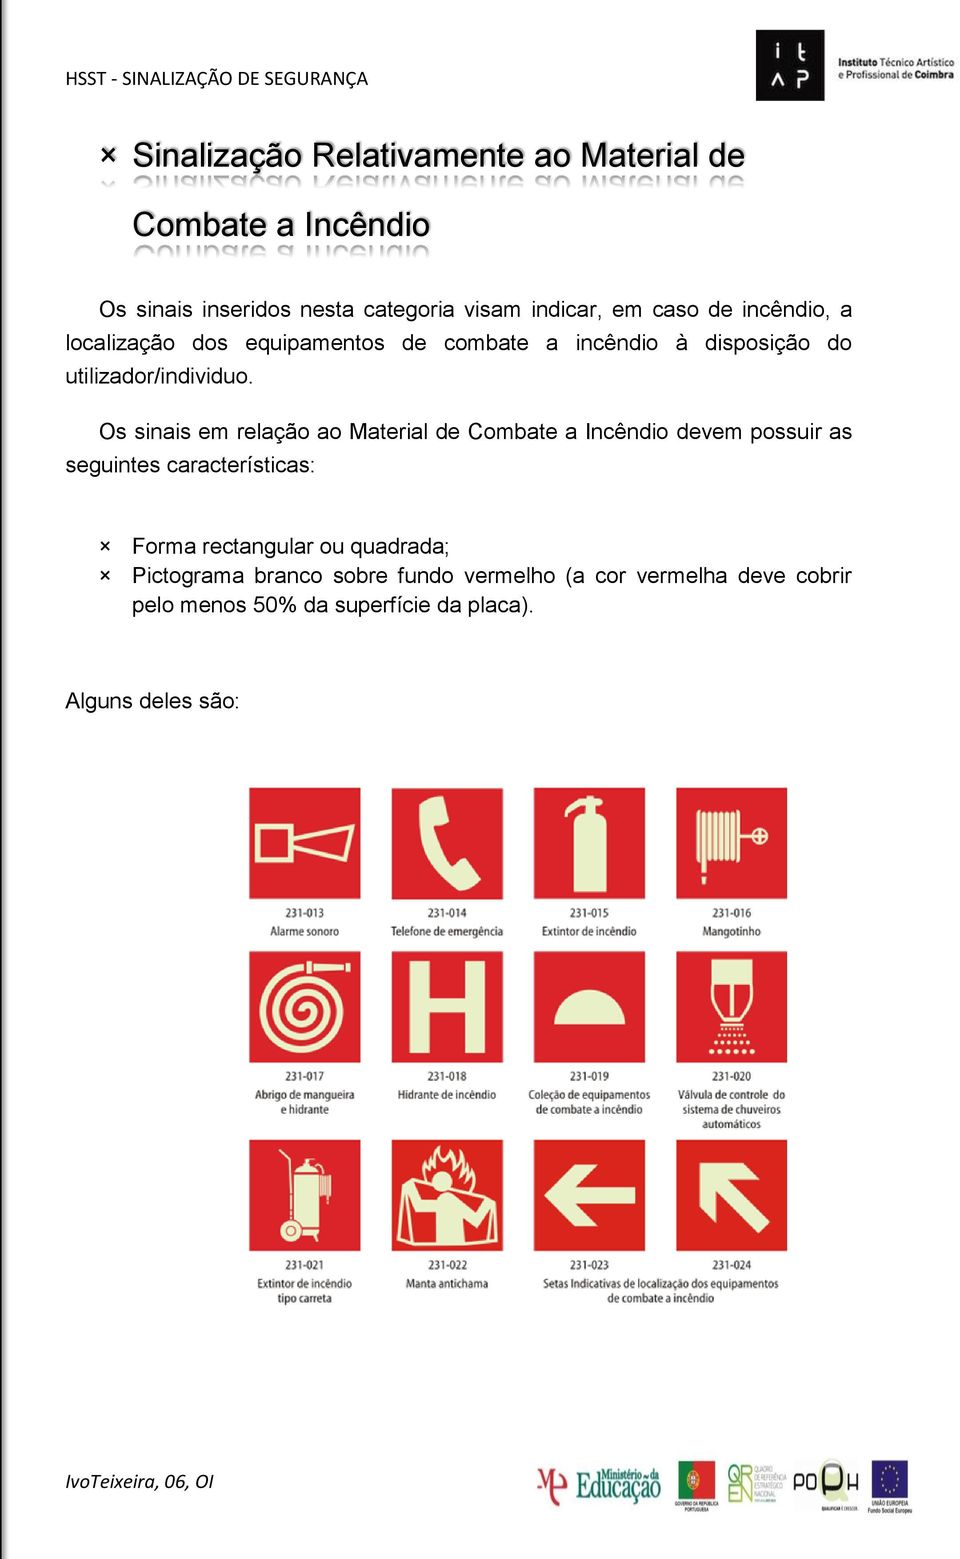 Os sinais em relação ao Material de Combate a Incêndio devem possuir as seguintes características: Forma rectangular ou